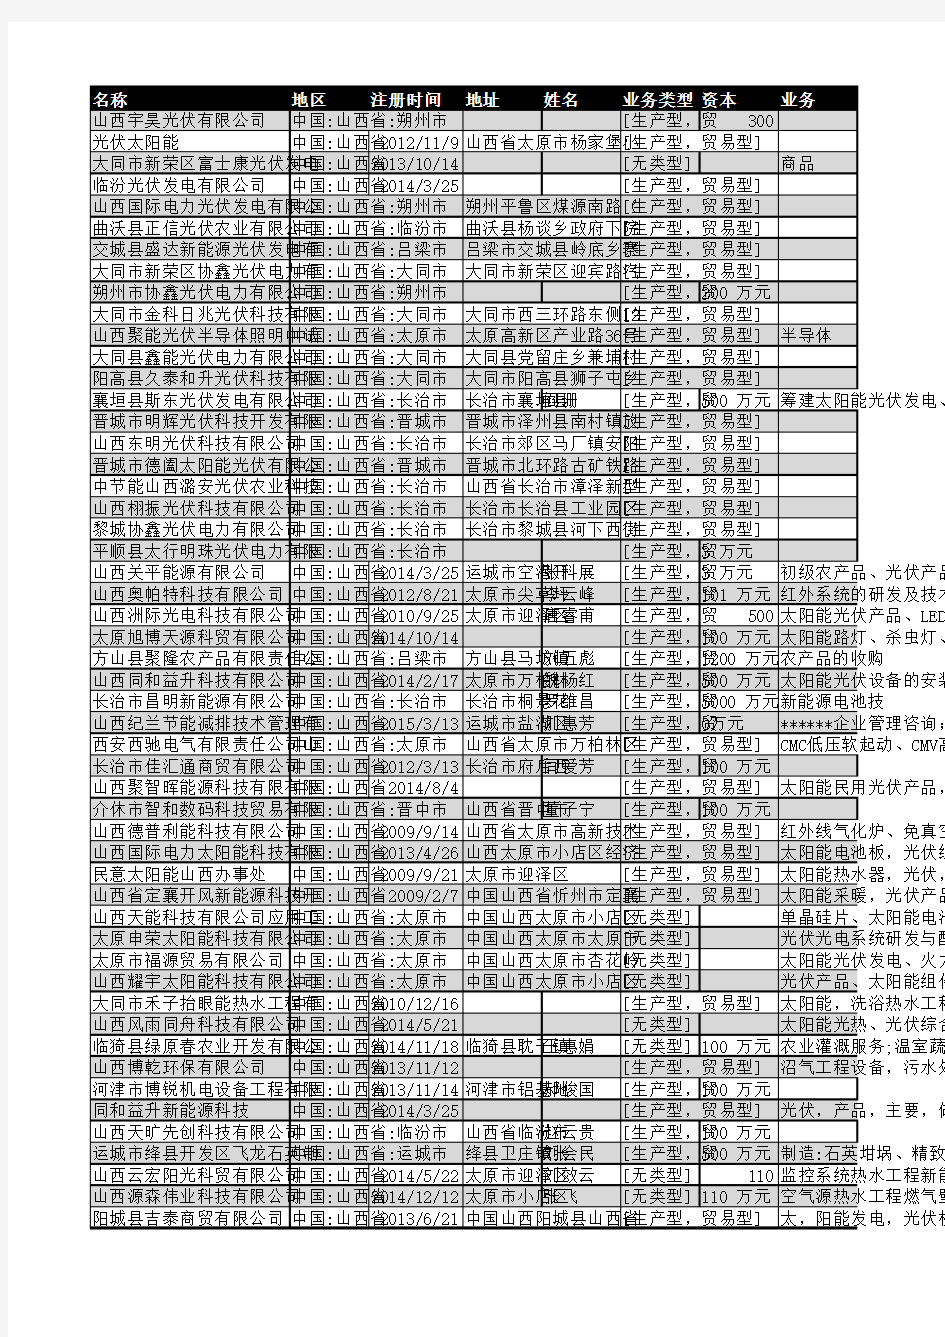 2019年山西省光伏行业企业名录52家